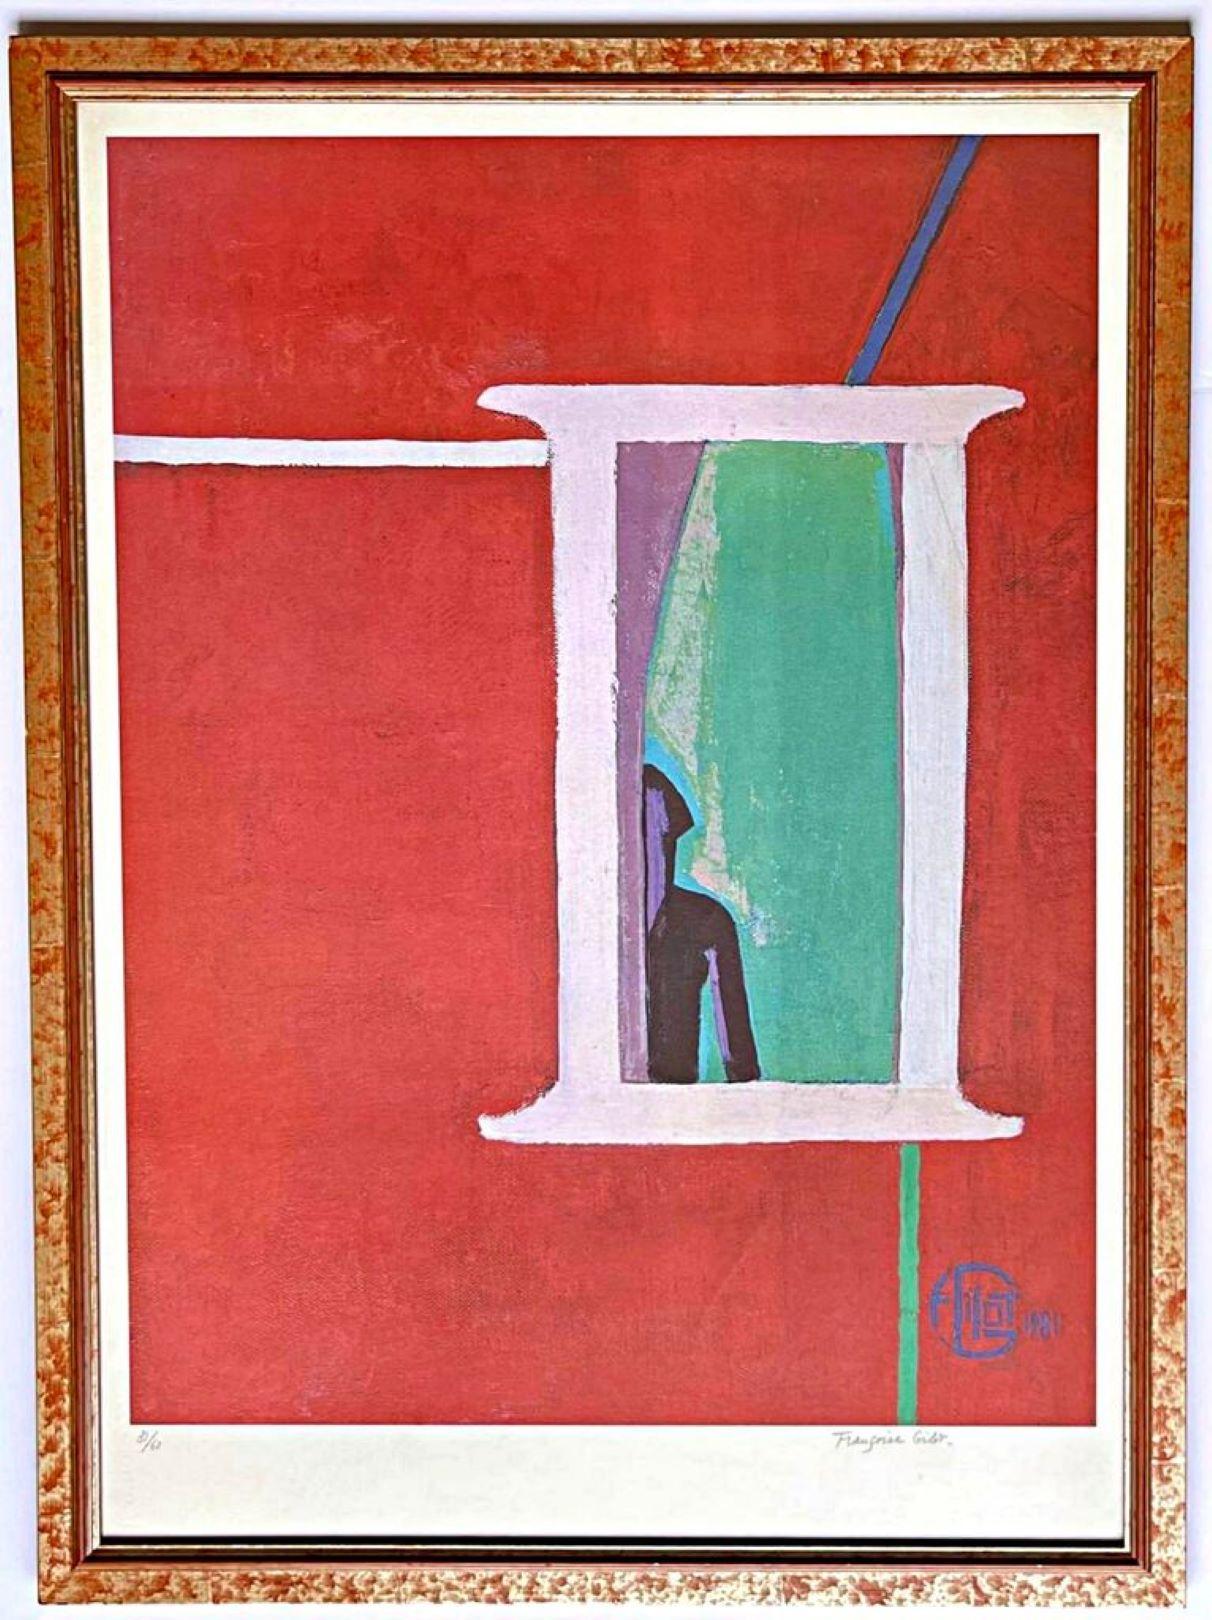 Window on Another Dimension, lithographie signée/n par la célèbre maîtresse de Picasso - Print de Françoise Gilot